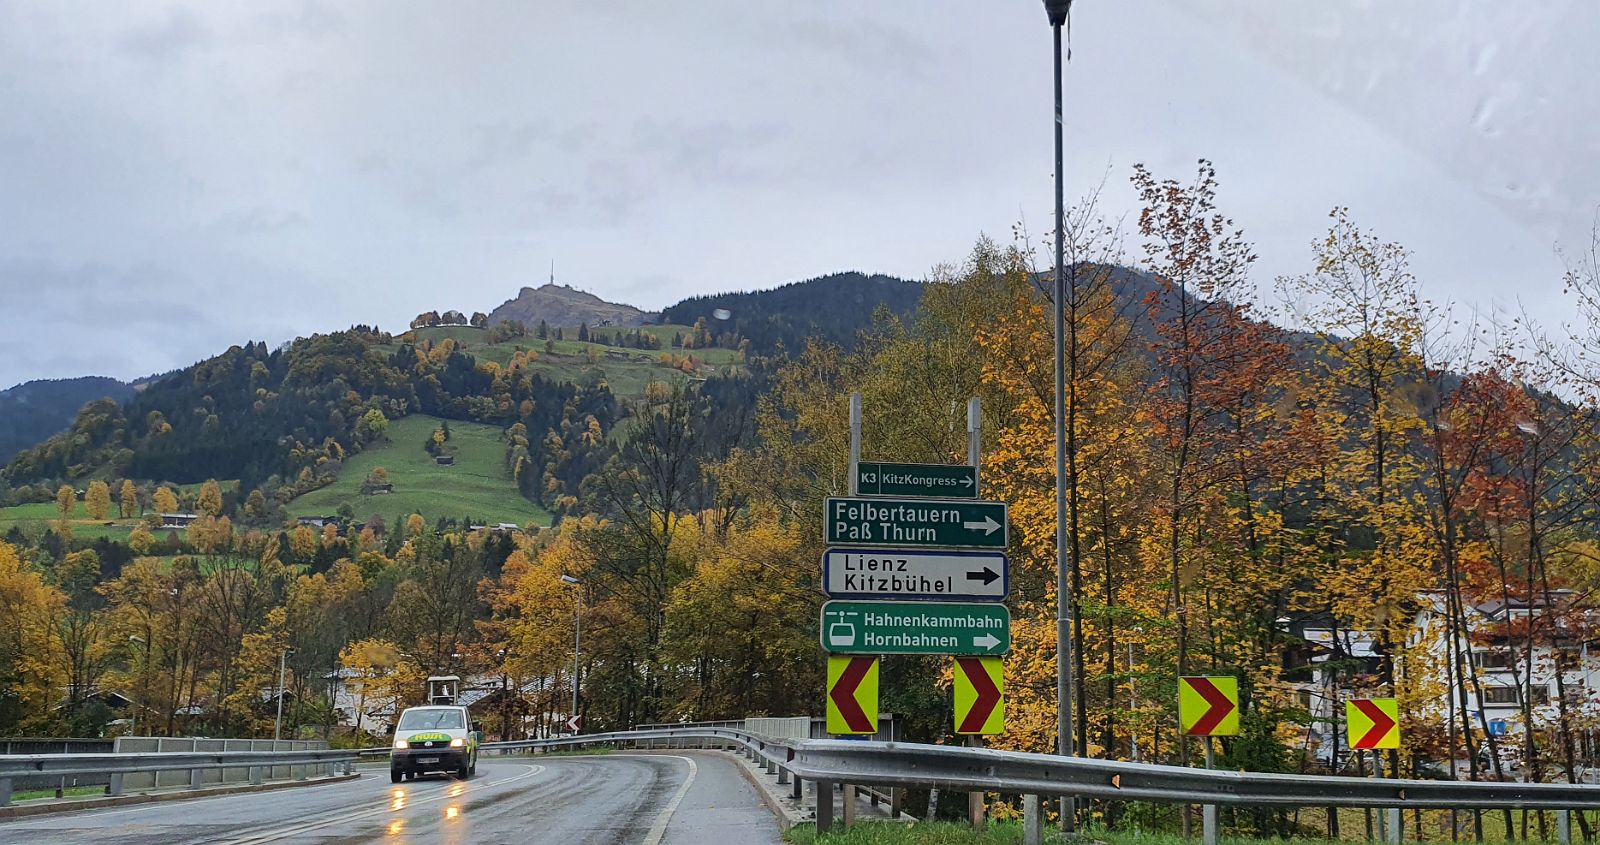 001-dag-1-01-onderweg.jpg - We gaan naar Tirol, nu onder ons tweetjes. Via de Felbertauernpass rijden we naar Osttirol.